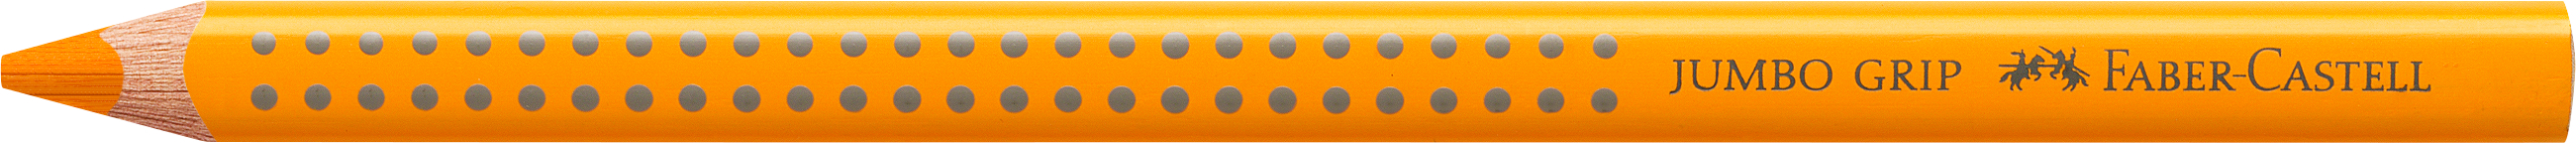 FABER-CASTELL Crayons Jumbo GRIP 110909 chrome foncé jaune chrome foncé jaune